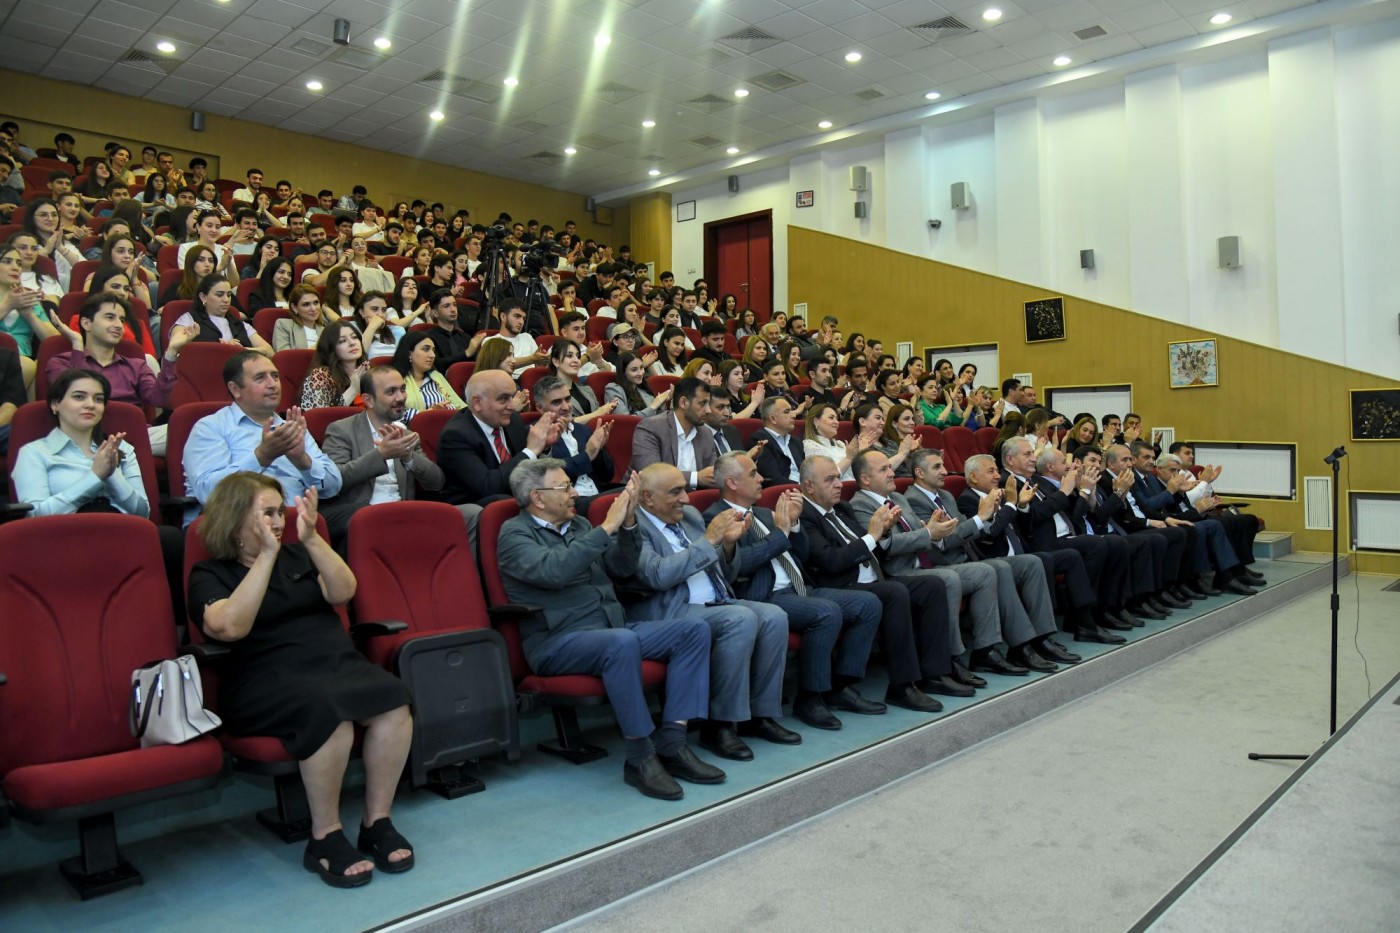 BMU-da Müstəqillik Günü münasibəti ilə konsert proqramı təşkil olunub - FOTOLAR